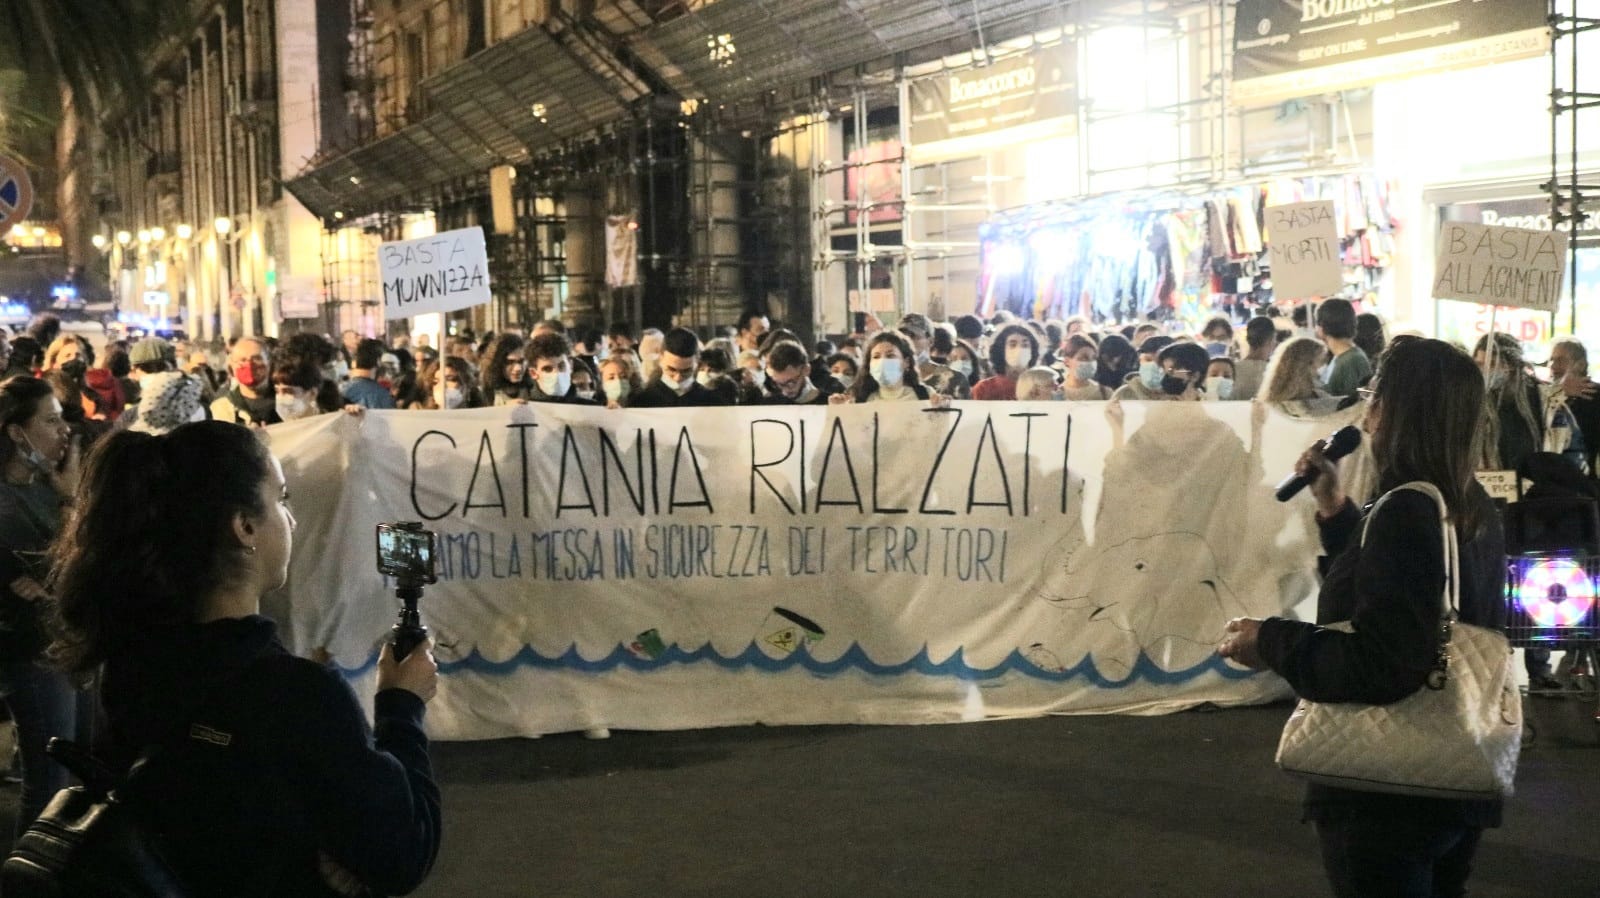 Partecipata manifestazione “Catania Rialzati”: chiesta la “messa in sicurezza della città”